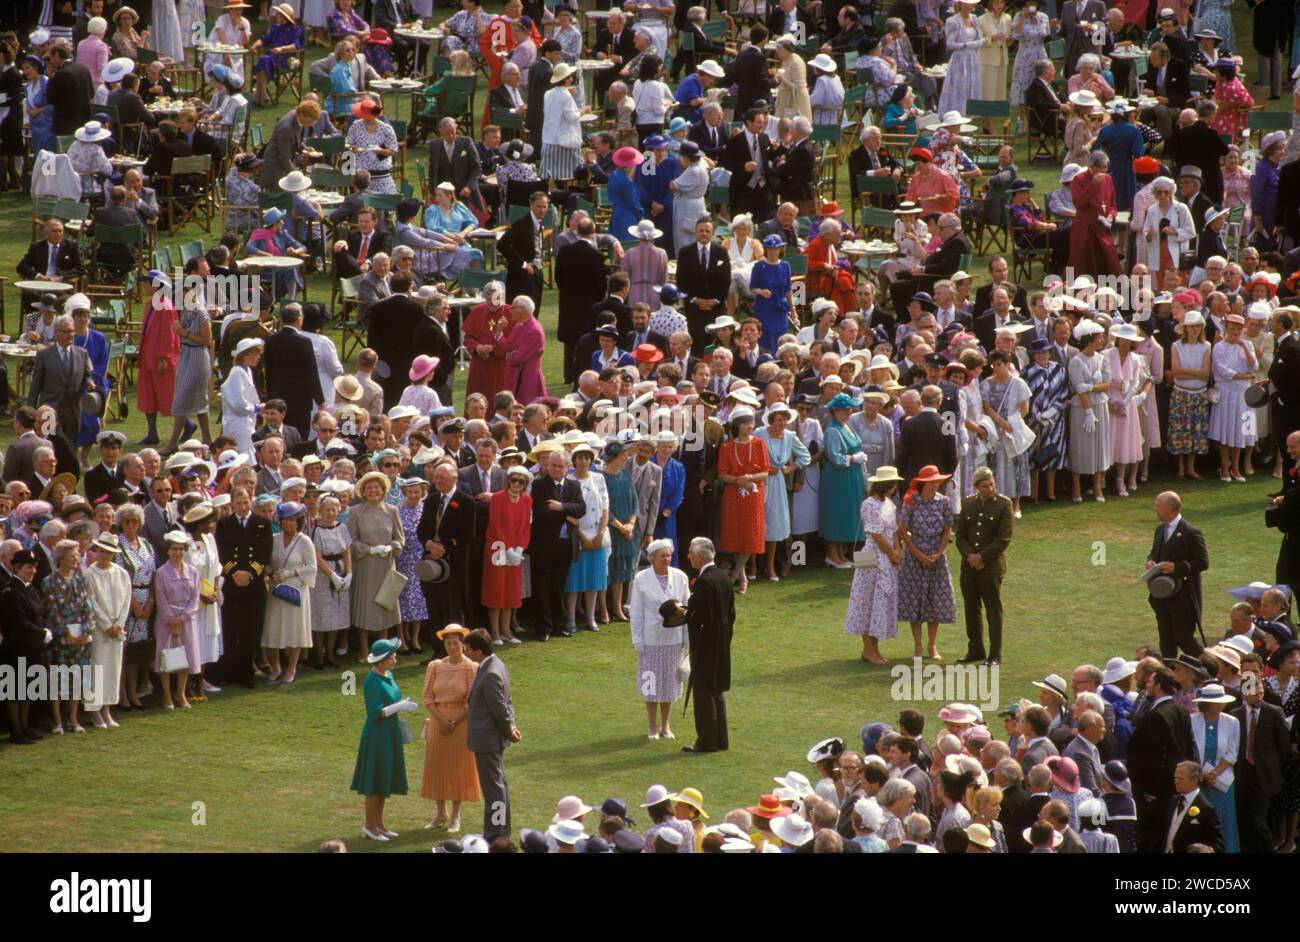 Queen Elizabeth II. Buckingham Palace Gartenparty. Die Königin in grünem Kleid (unten links) und mit weißen langen Handschuhen, trifft Leute, die nominiert wurden, um sie zu treffen und an einer ihrer Sommergartenpartys teilzunehmen. London, England Juni 1985. HOMER SYKES AUS DEN 1980ER JAHREN Stockfoto